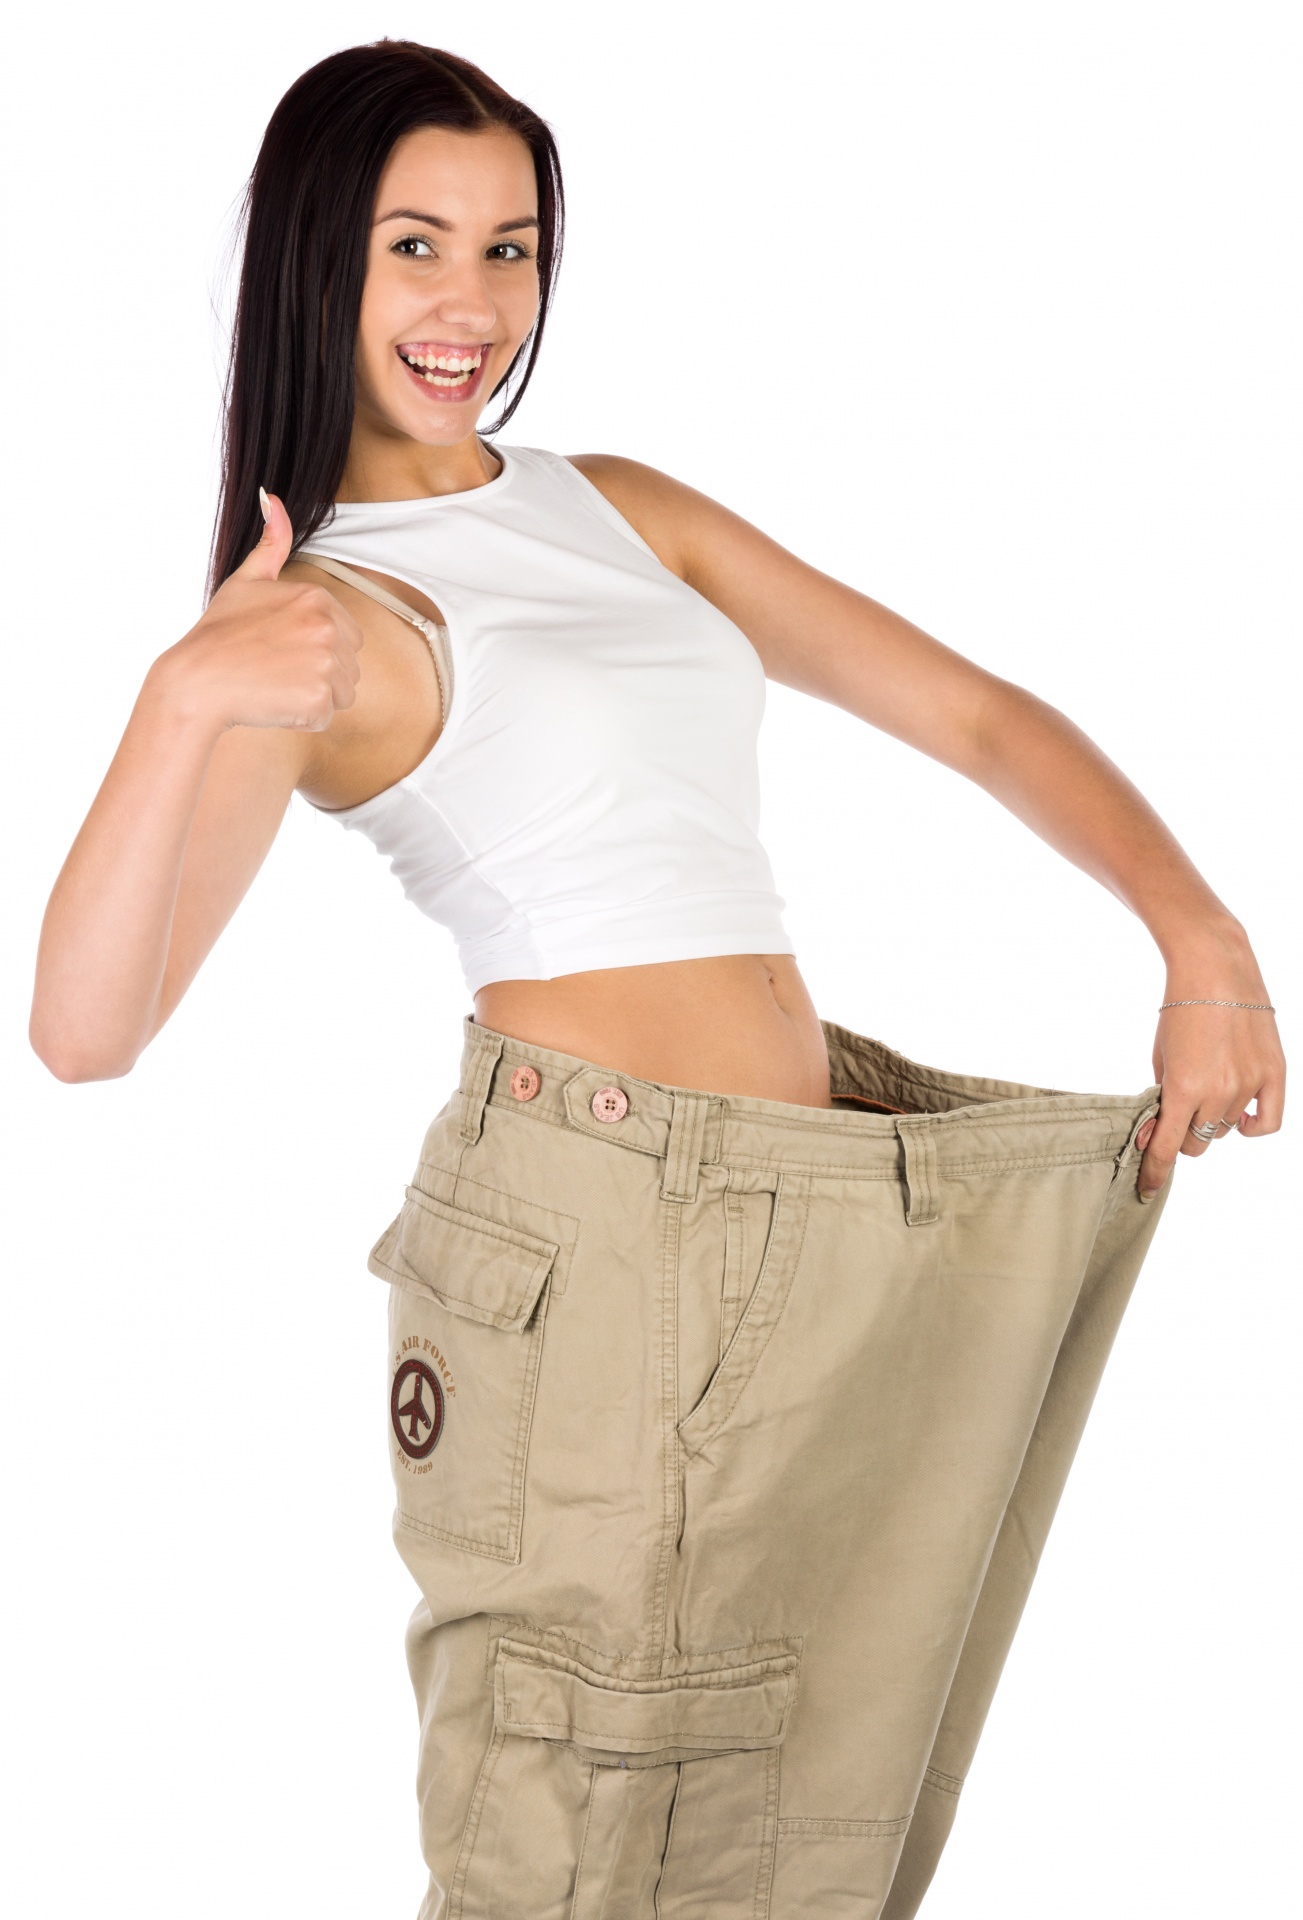 La donna in pantaloni dopo la dieta